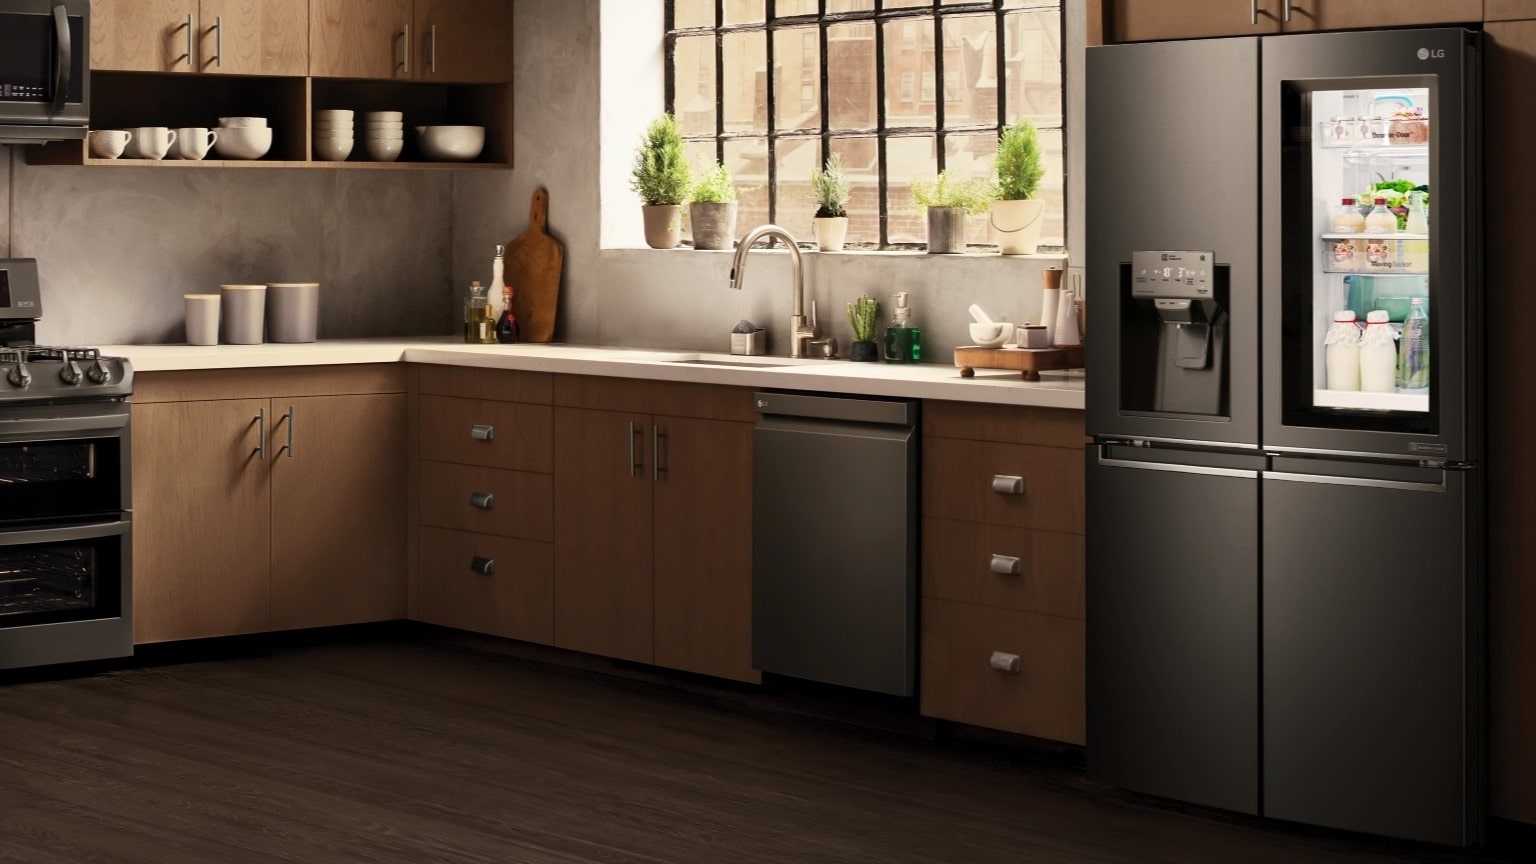 Arredamento industrial: immagine di una cucina stile industial chic con elettrodomestici moderni come il frigorifero LG.